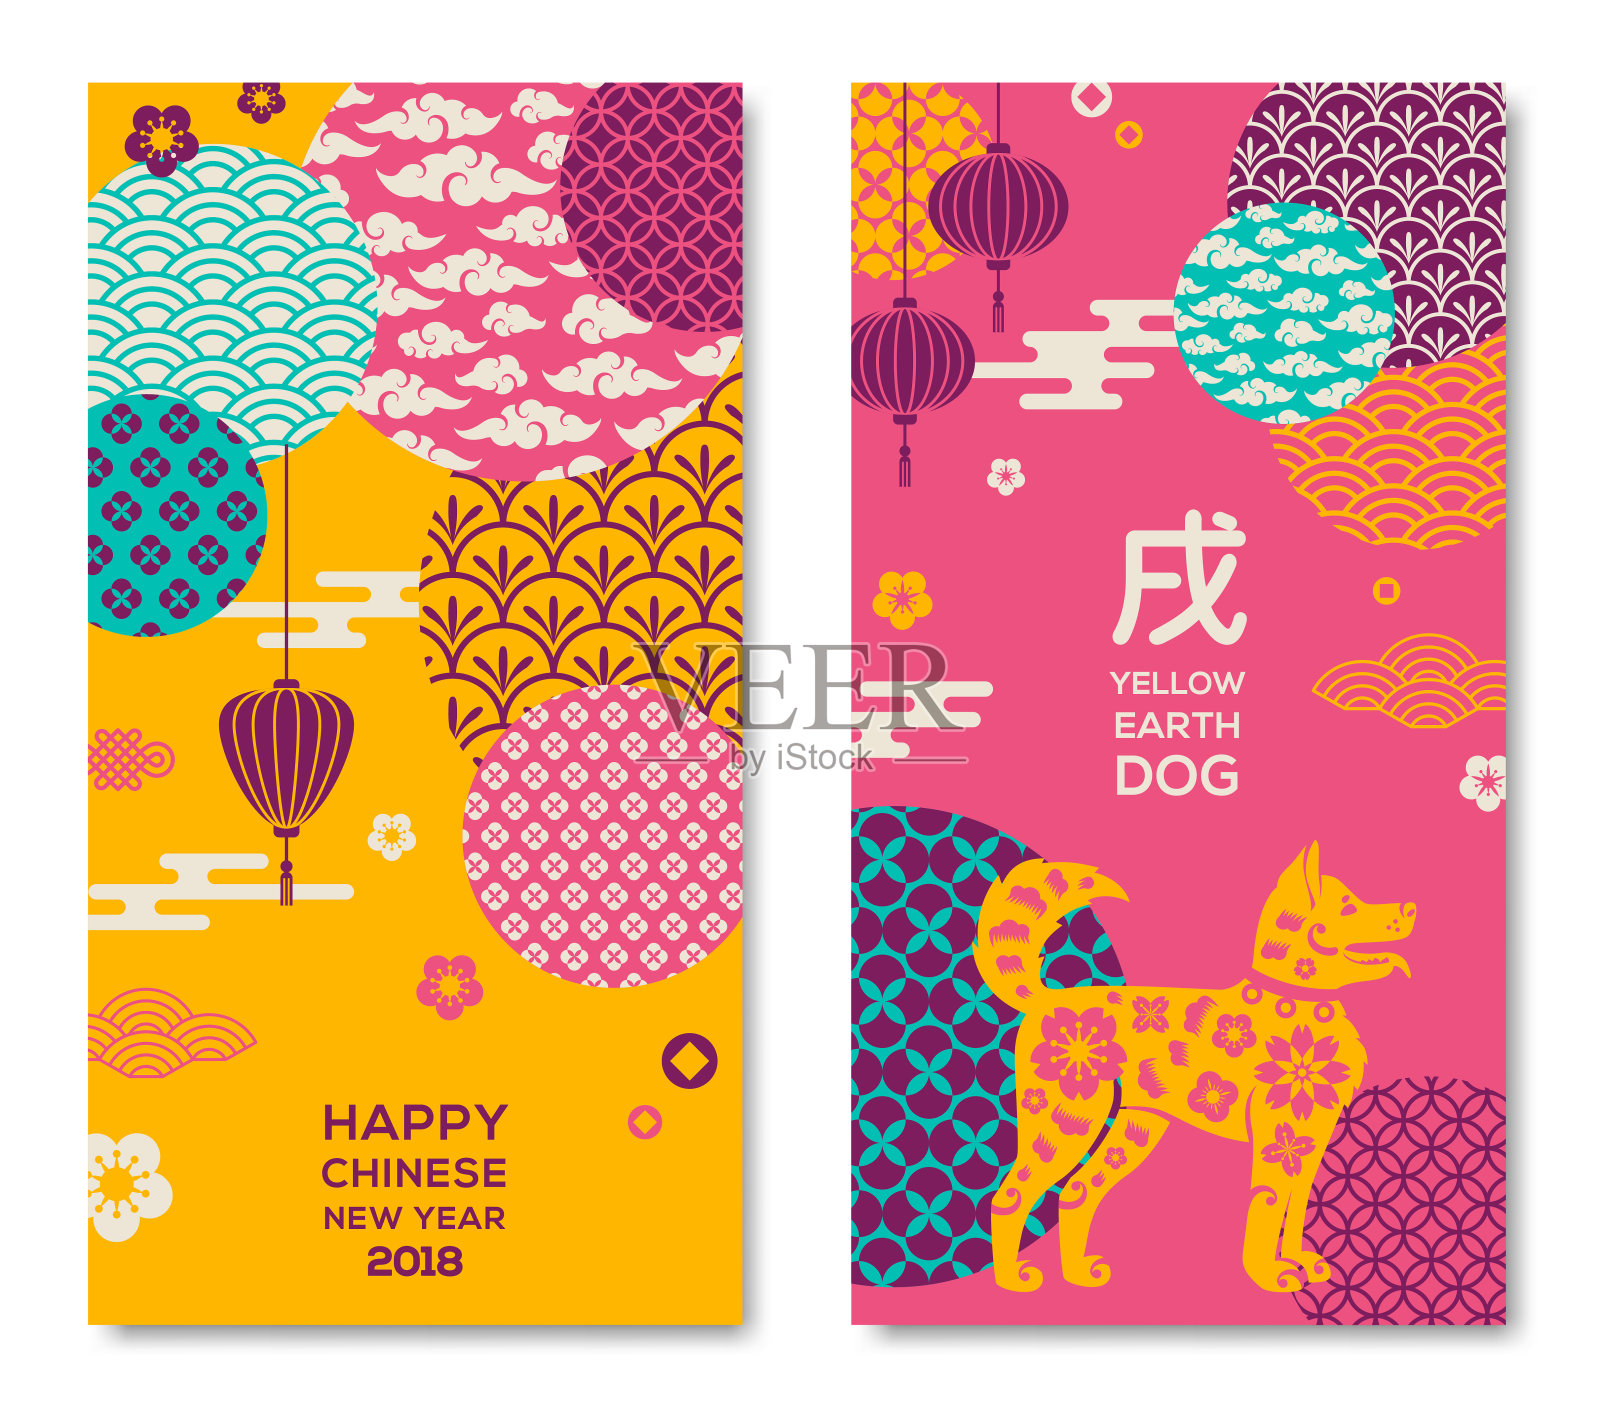 中国新年横幅设置与现代风格的图案设计模板素材